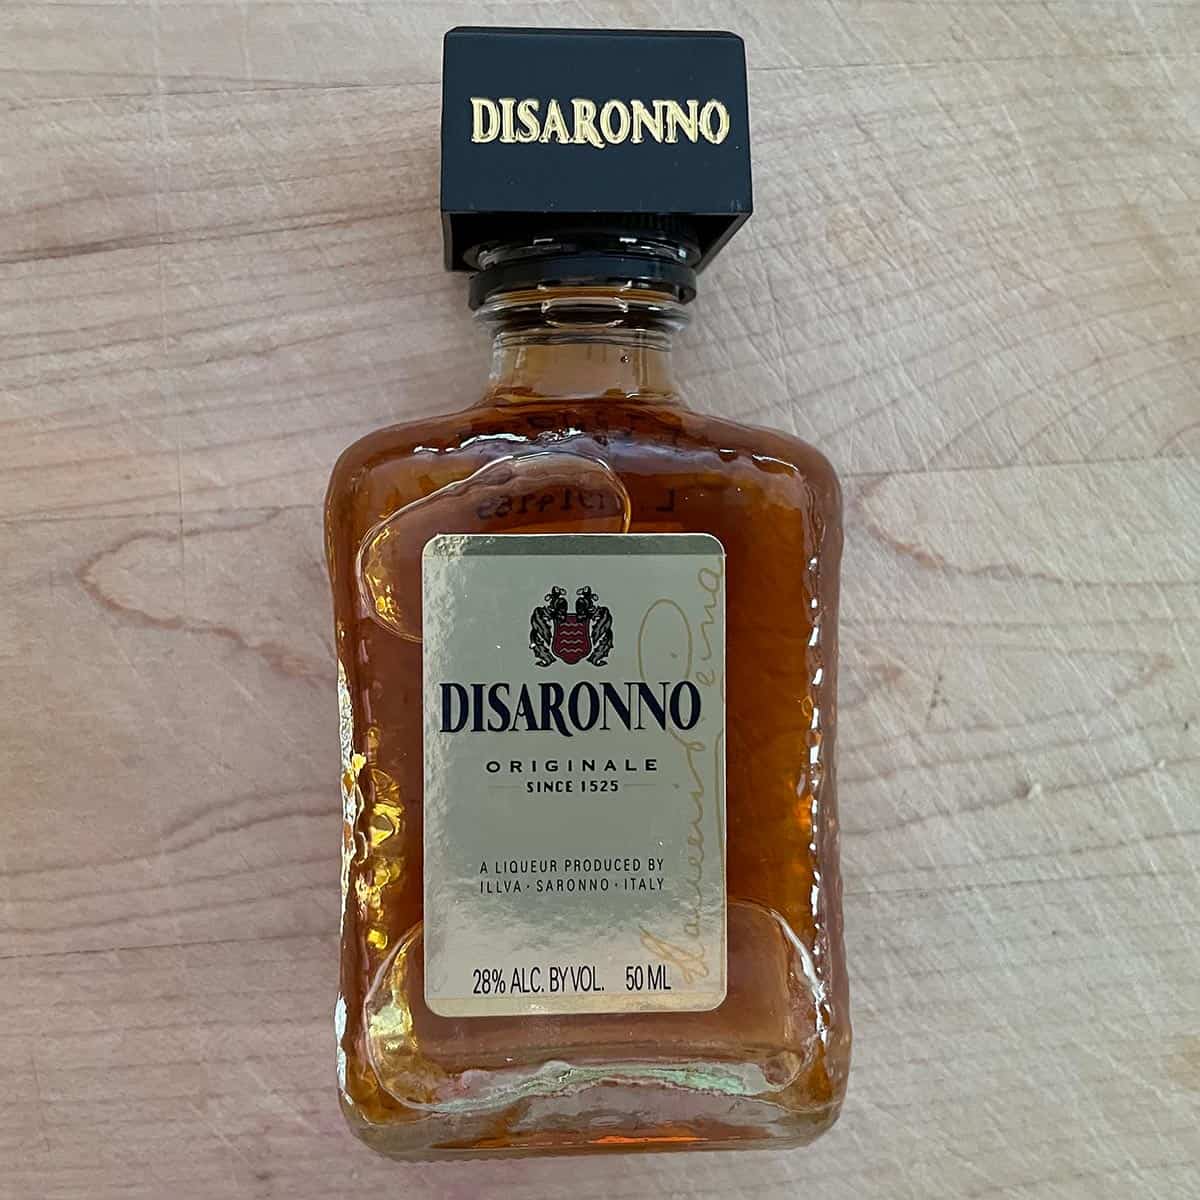 Small bottle of Disaronno Amaretto.